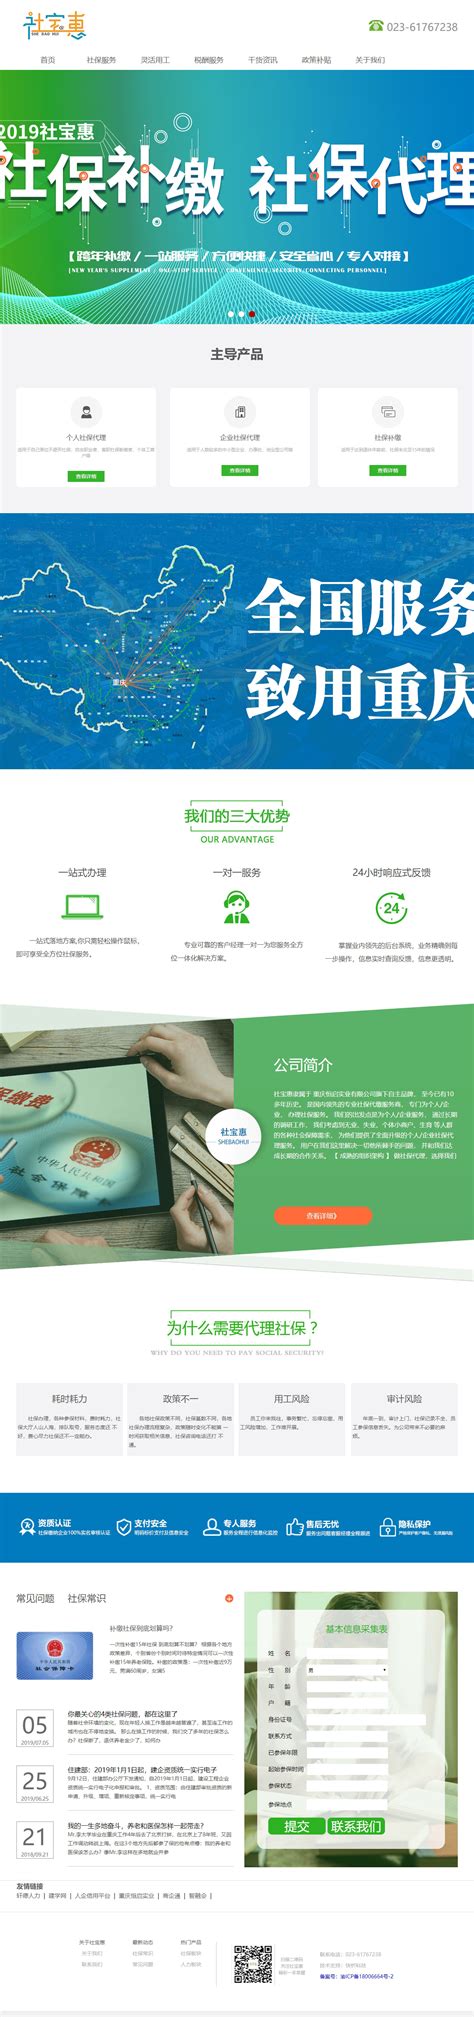 重庆网站营销推广方案